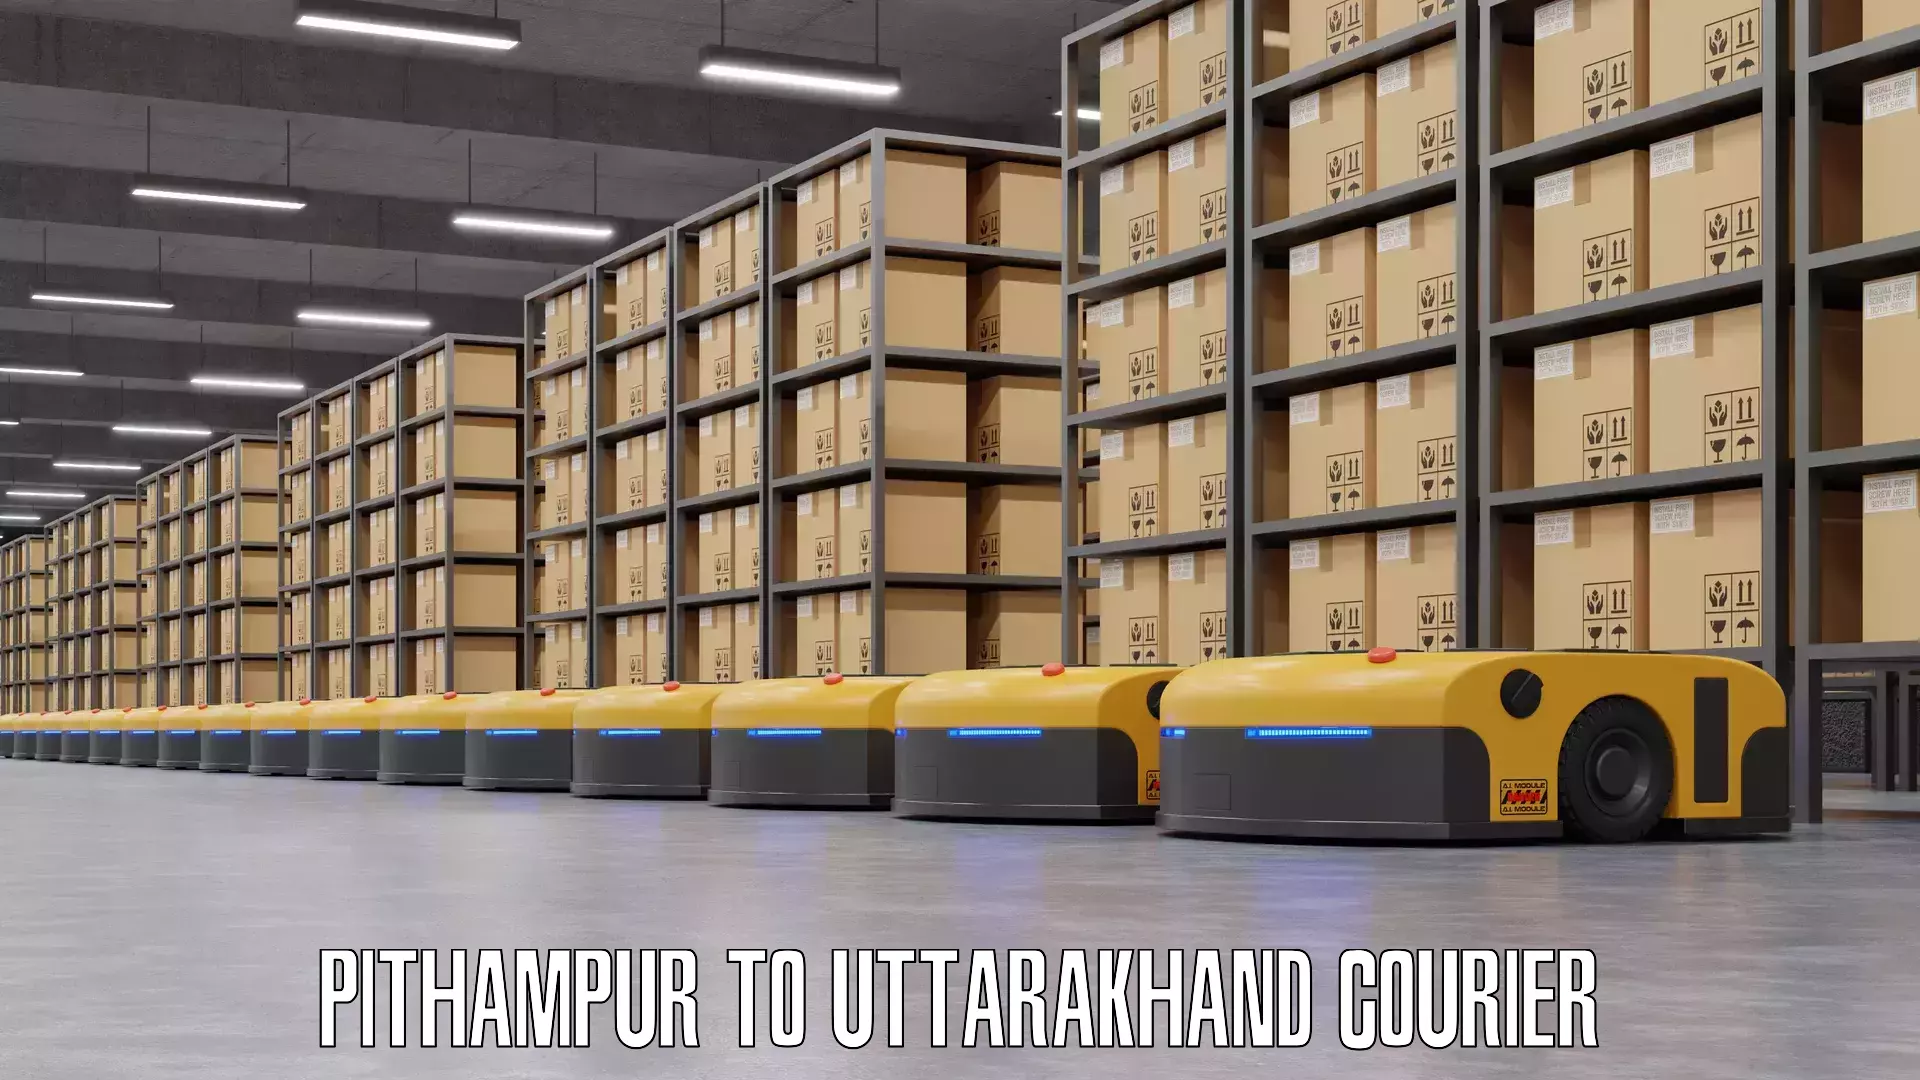 Baggage transport estimate Pithampur to Uttarakhand